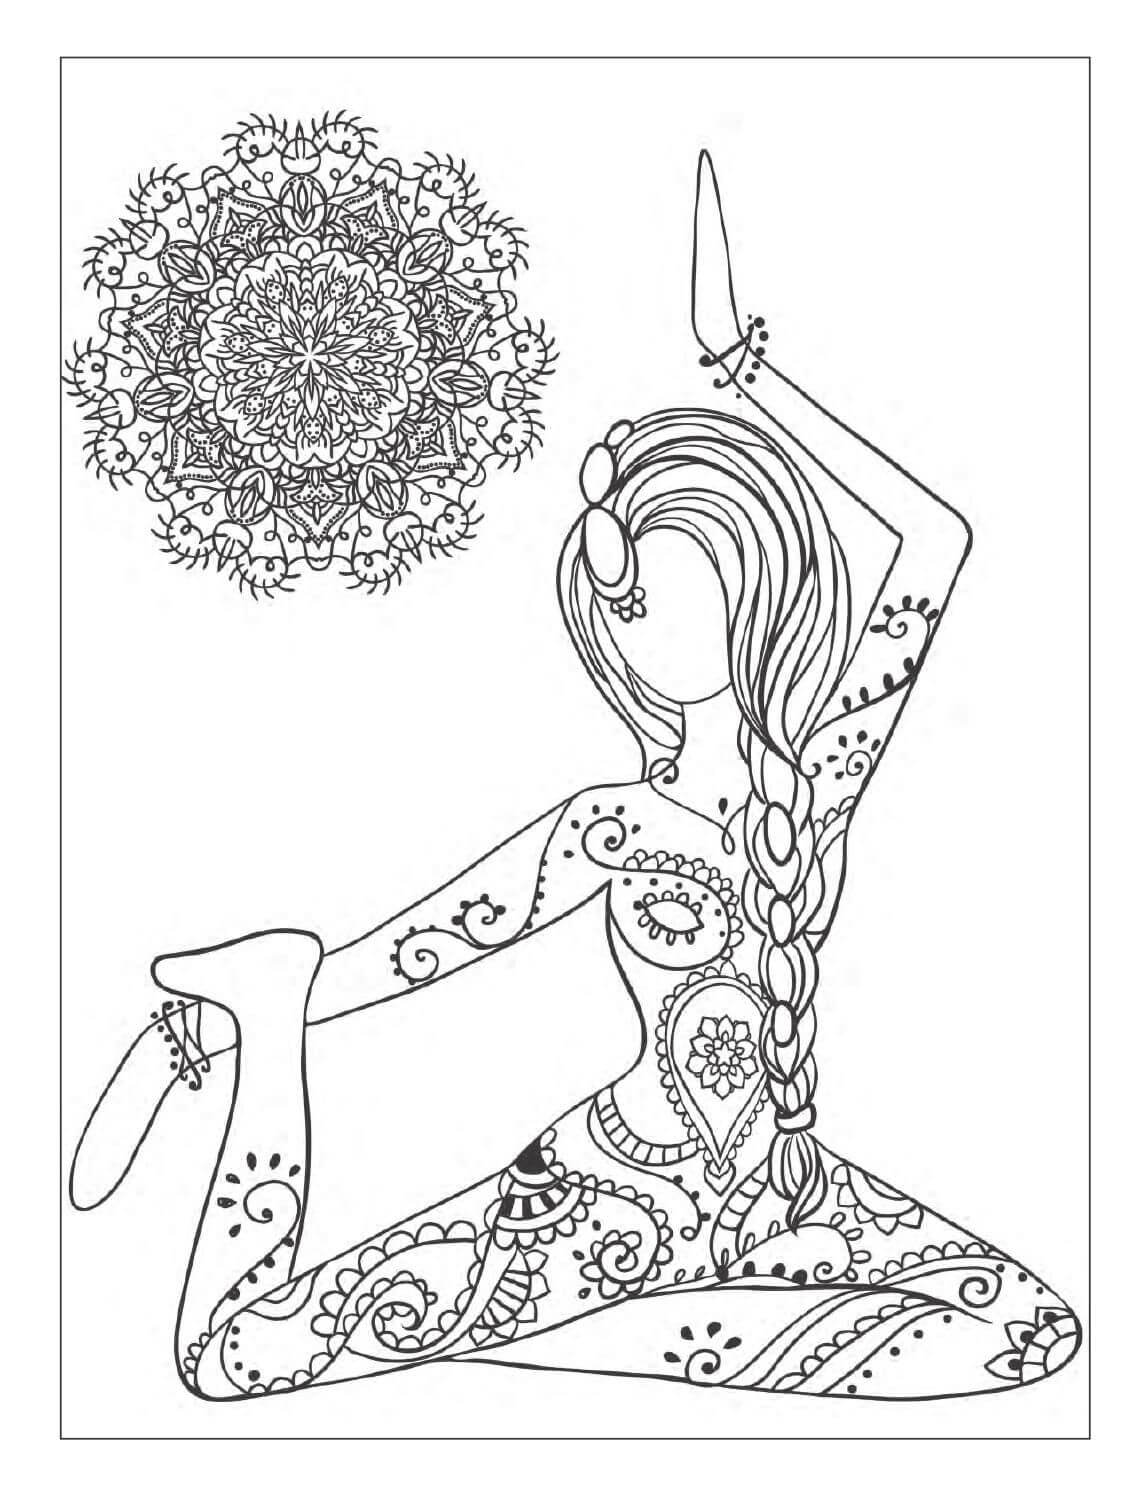 Printable Yoga Pose Coloring Page